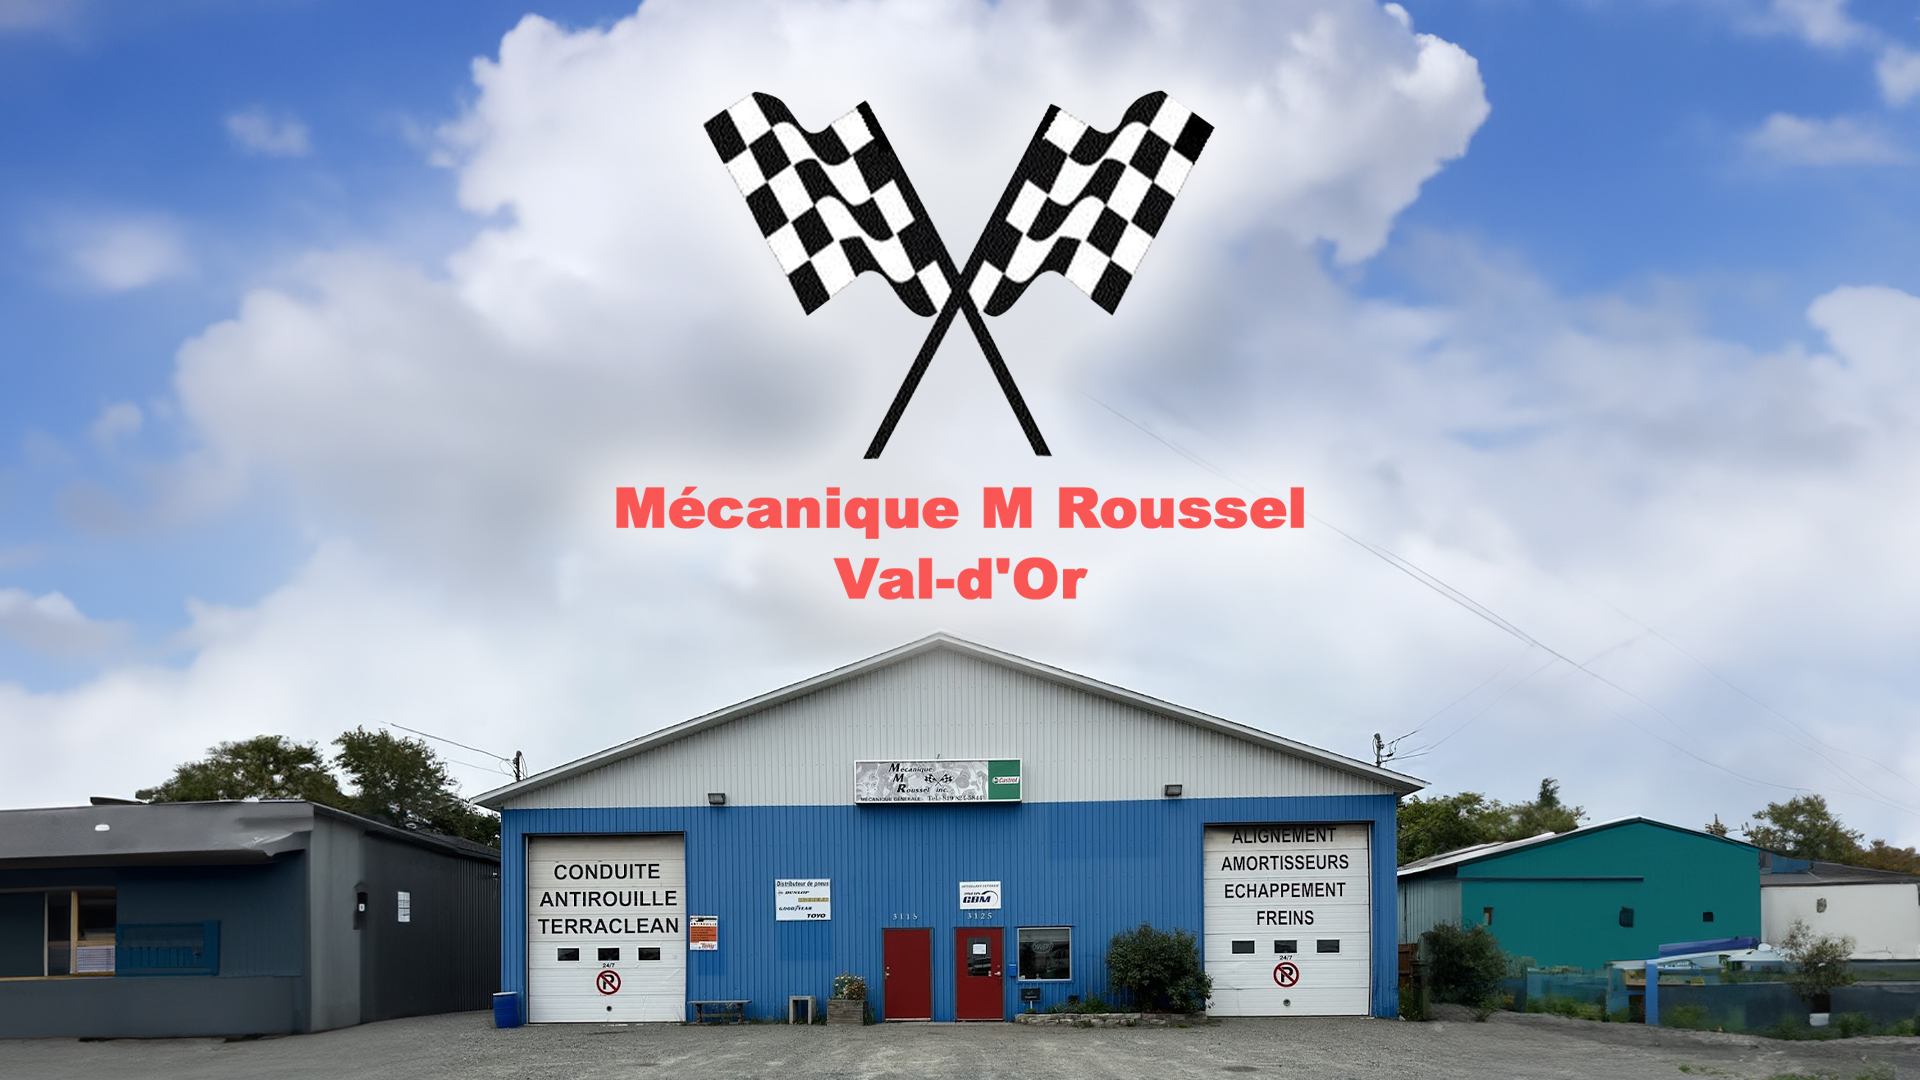 Mécanique M Roussel Inc